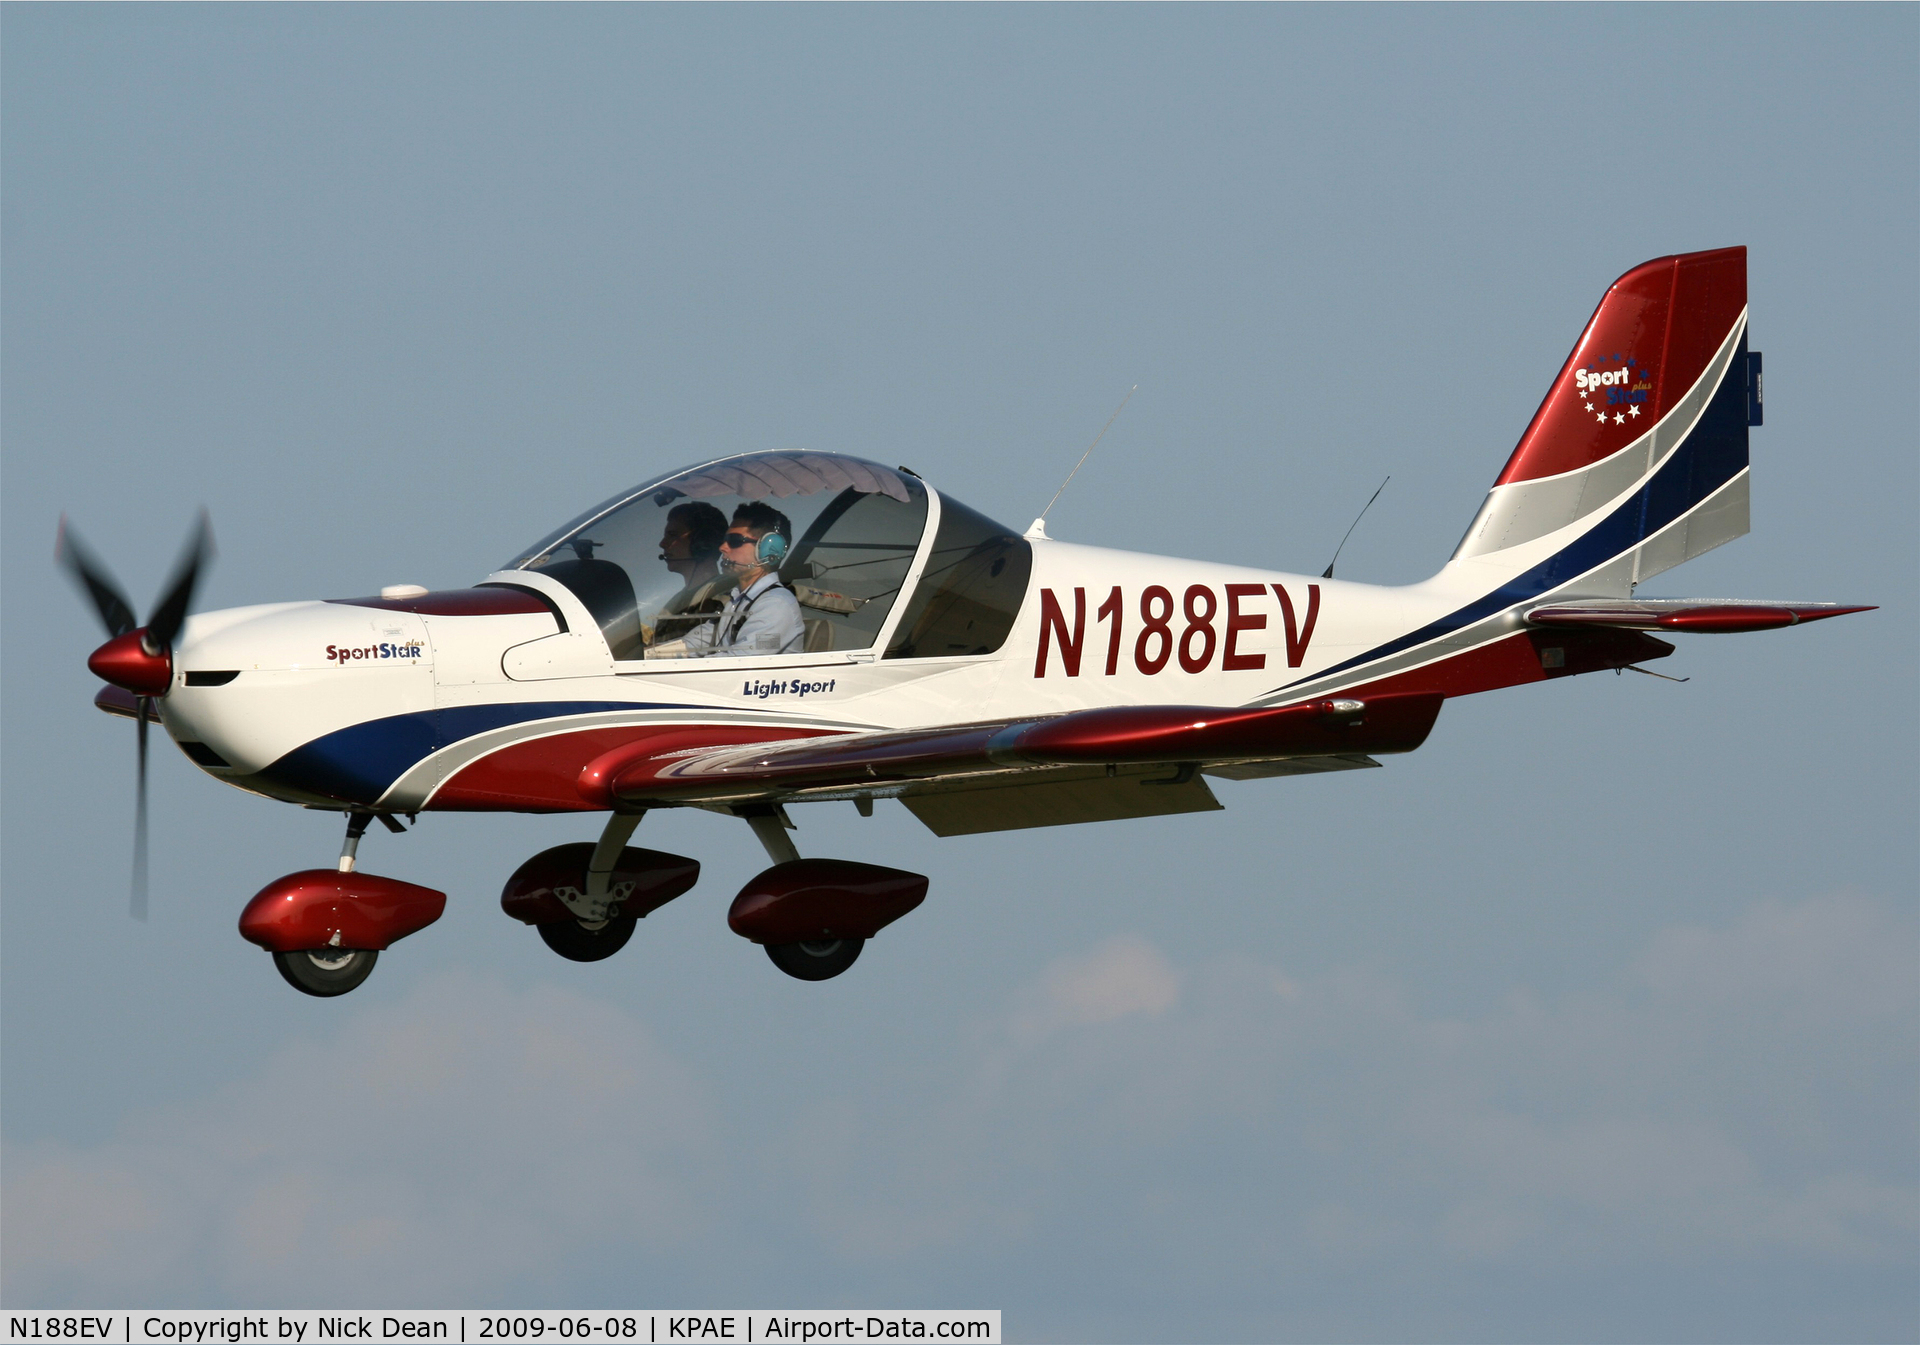 N188EV, 2007 Evektor-Aerotechnik SPORTSTAR PLUS C/N 20071008, KPAE